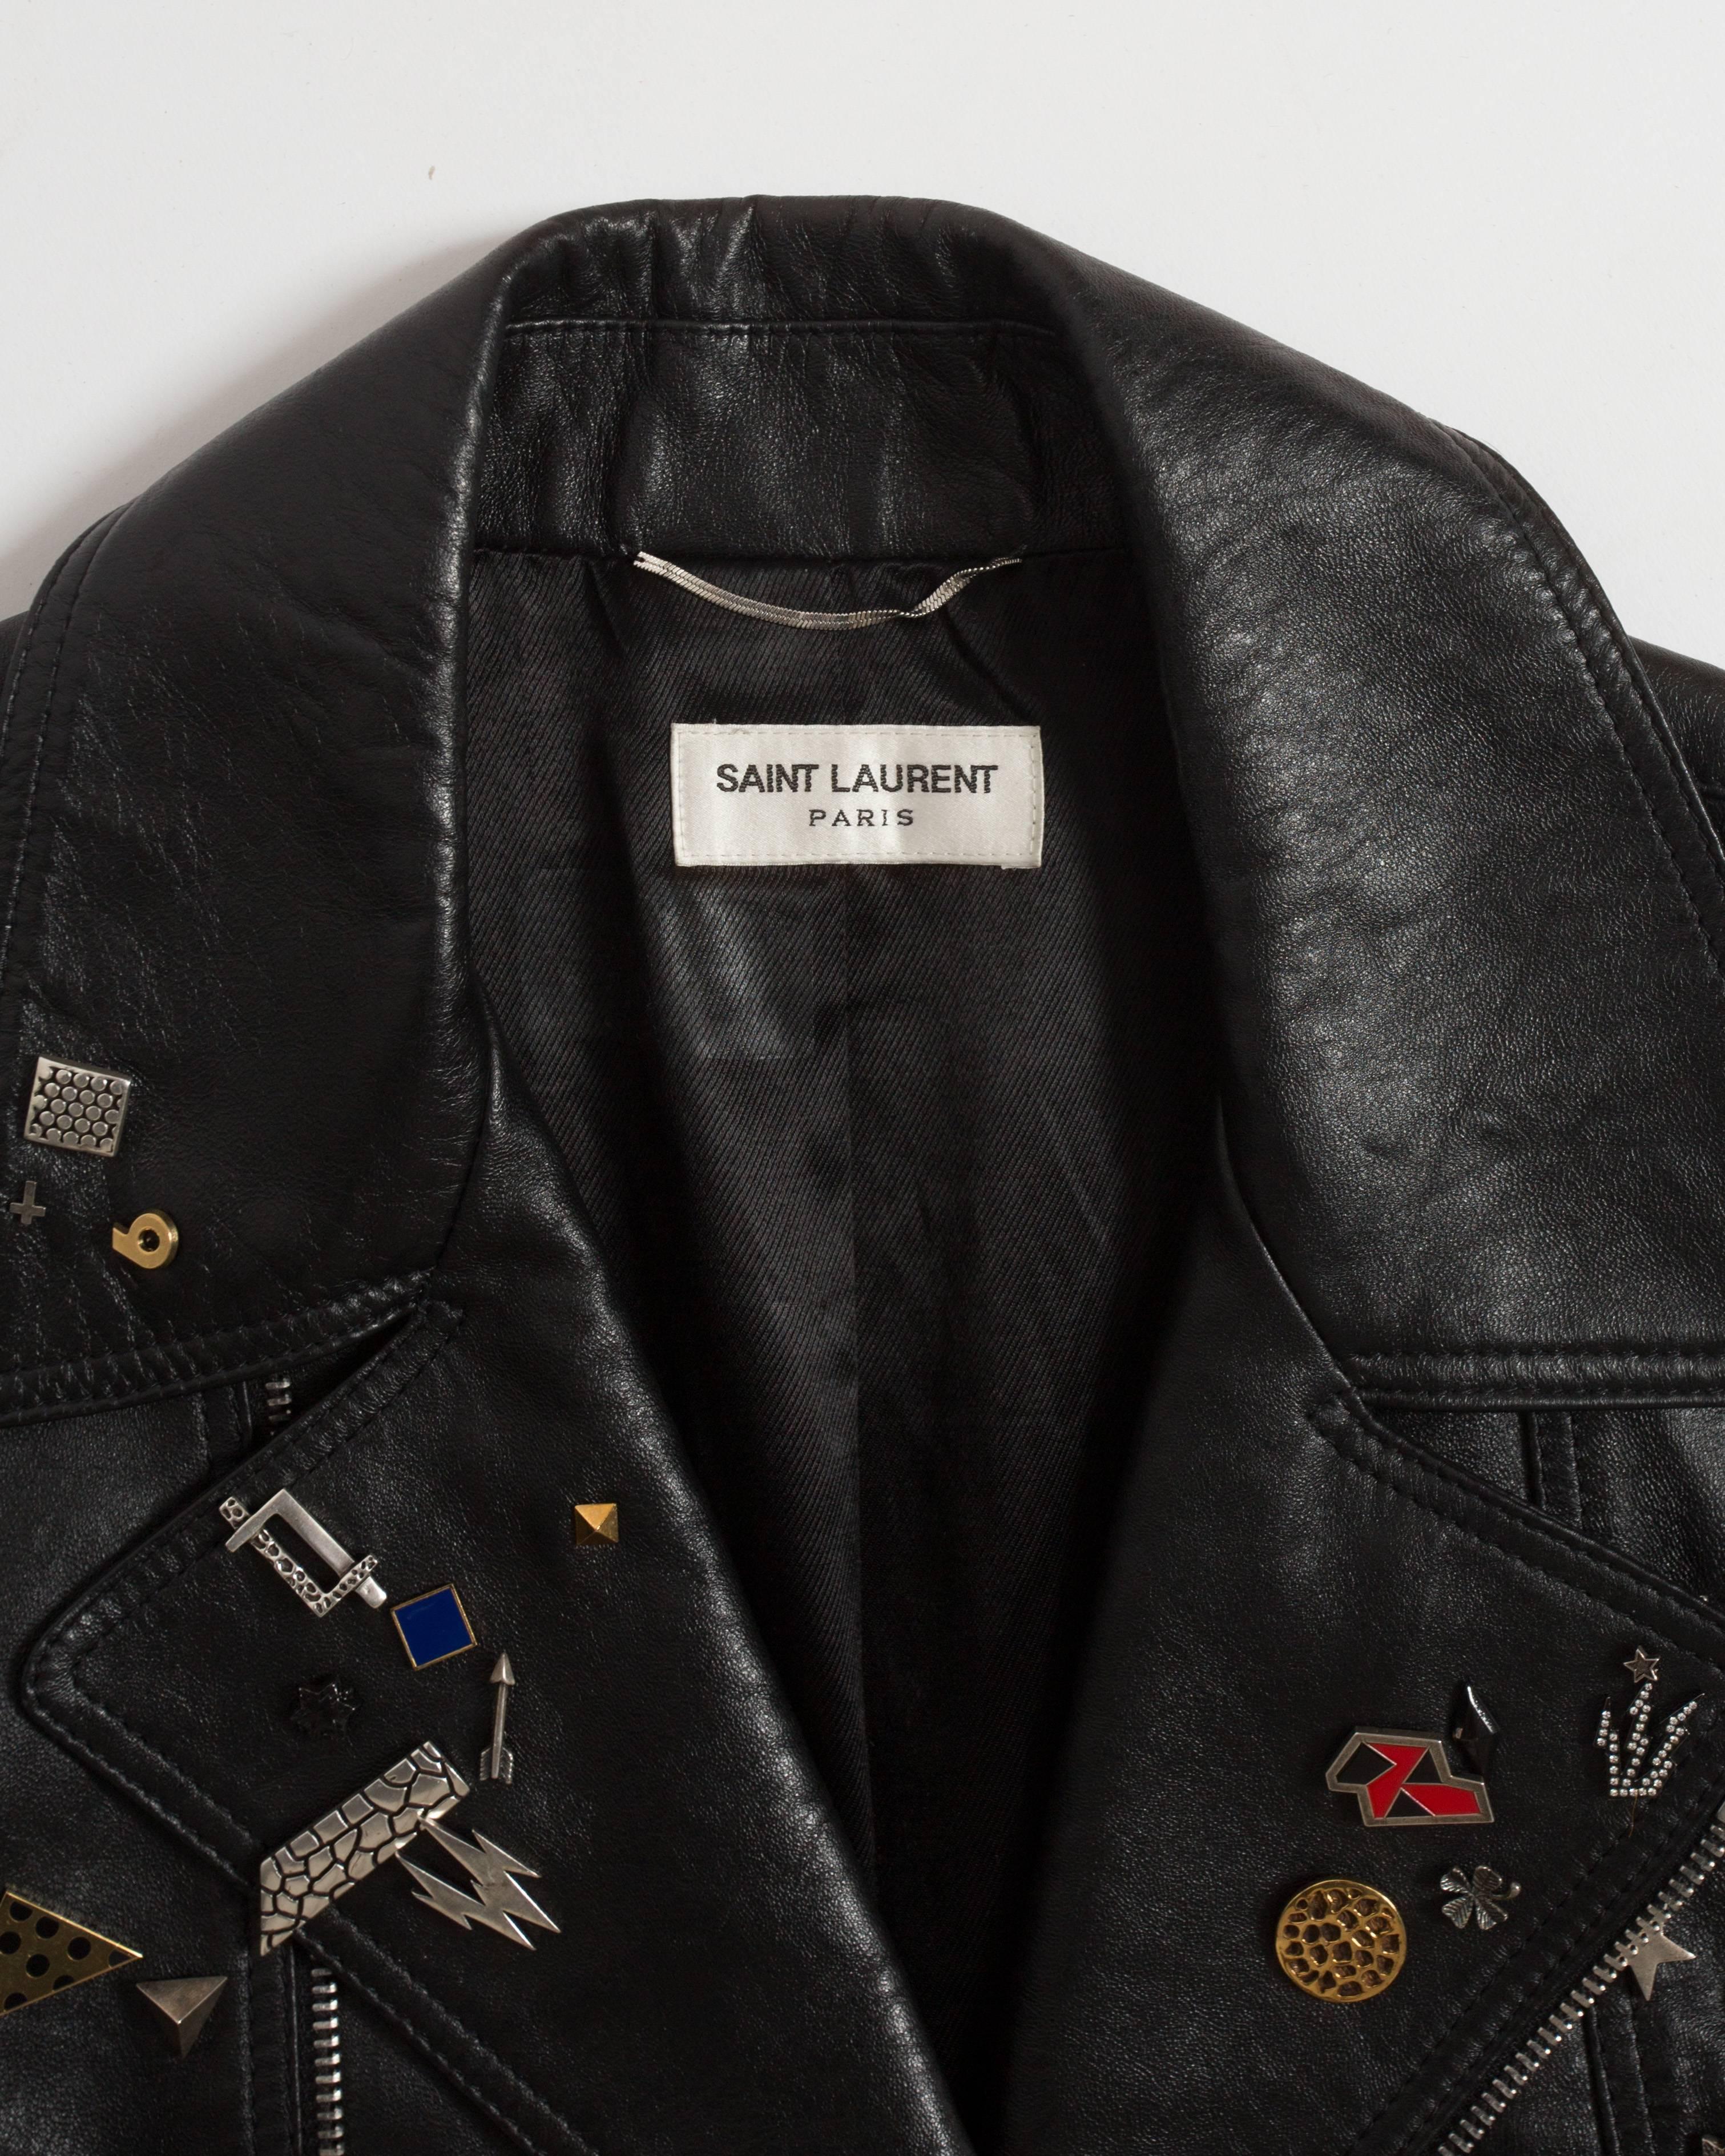 Saint Laurent by Hedi Slimane black leather biker jacket with badges , AW 2015 2